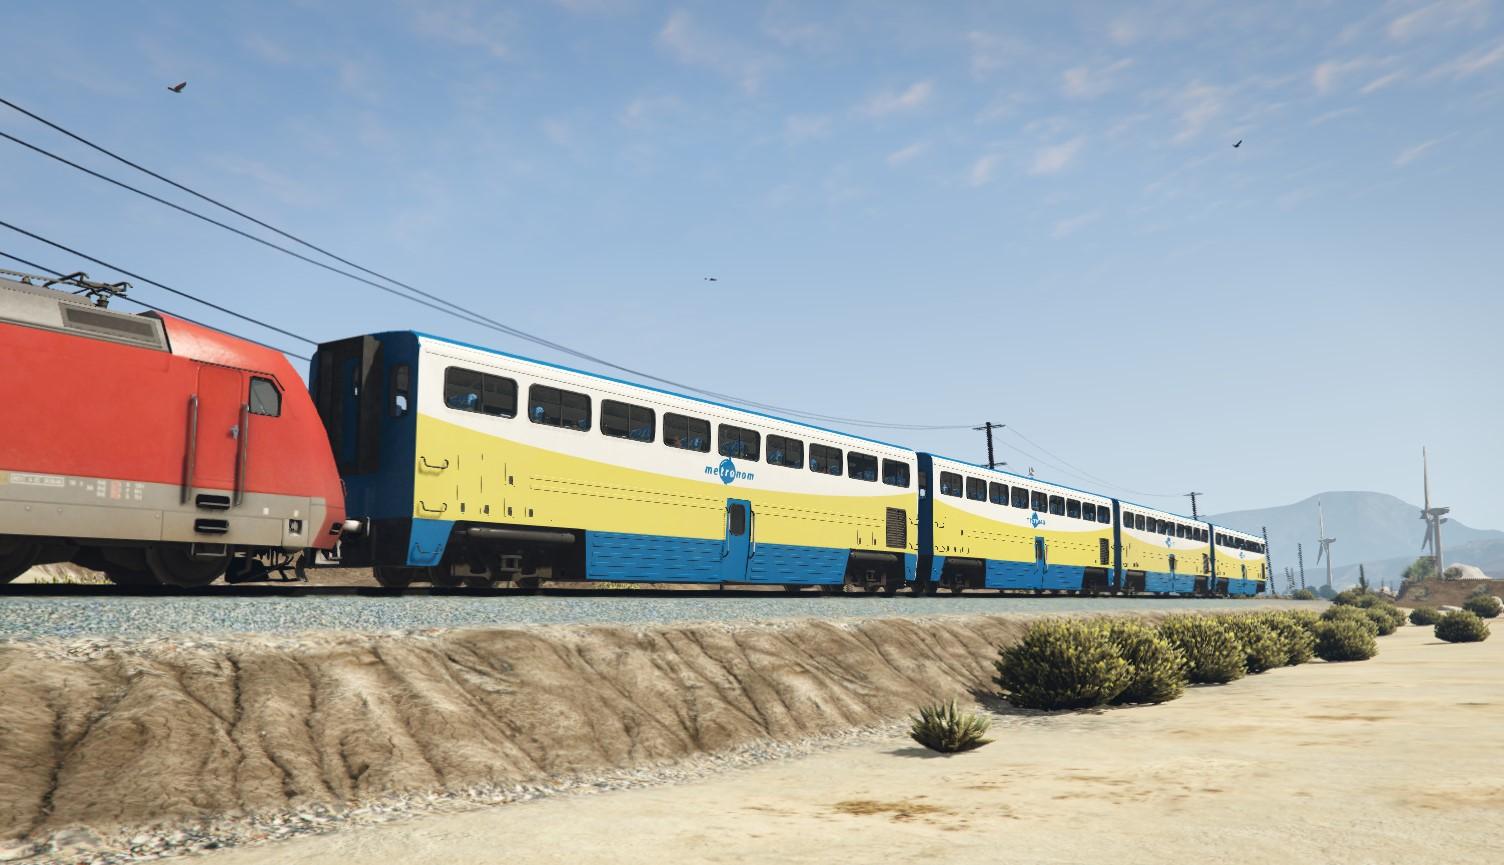 Gta 5 overhauled trains фото 81